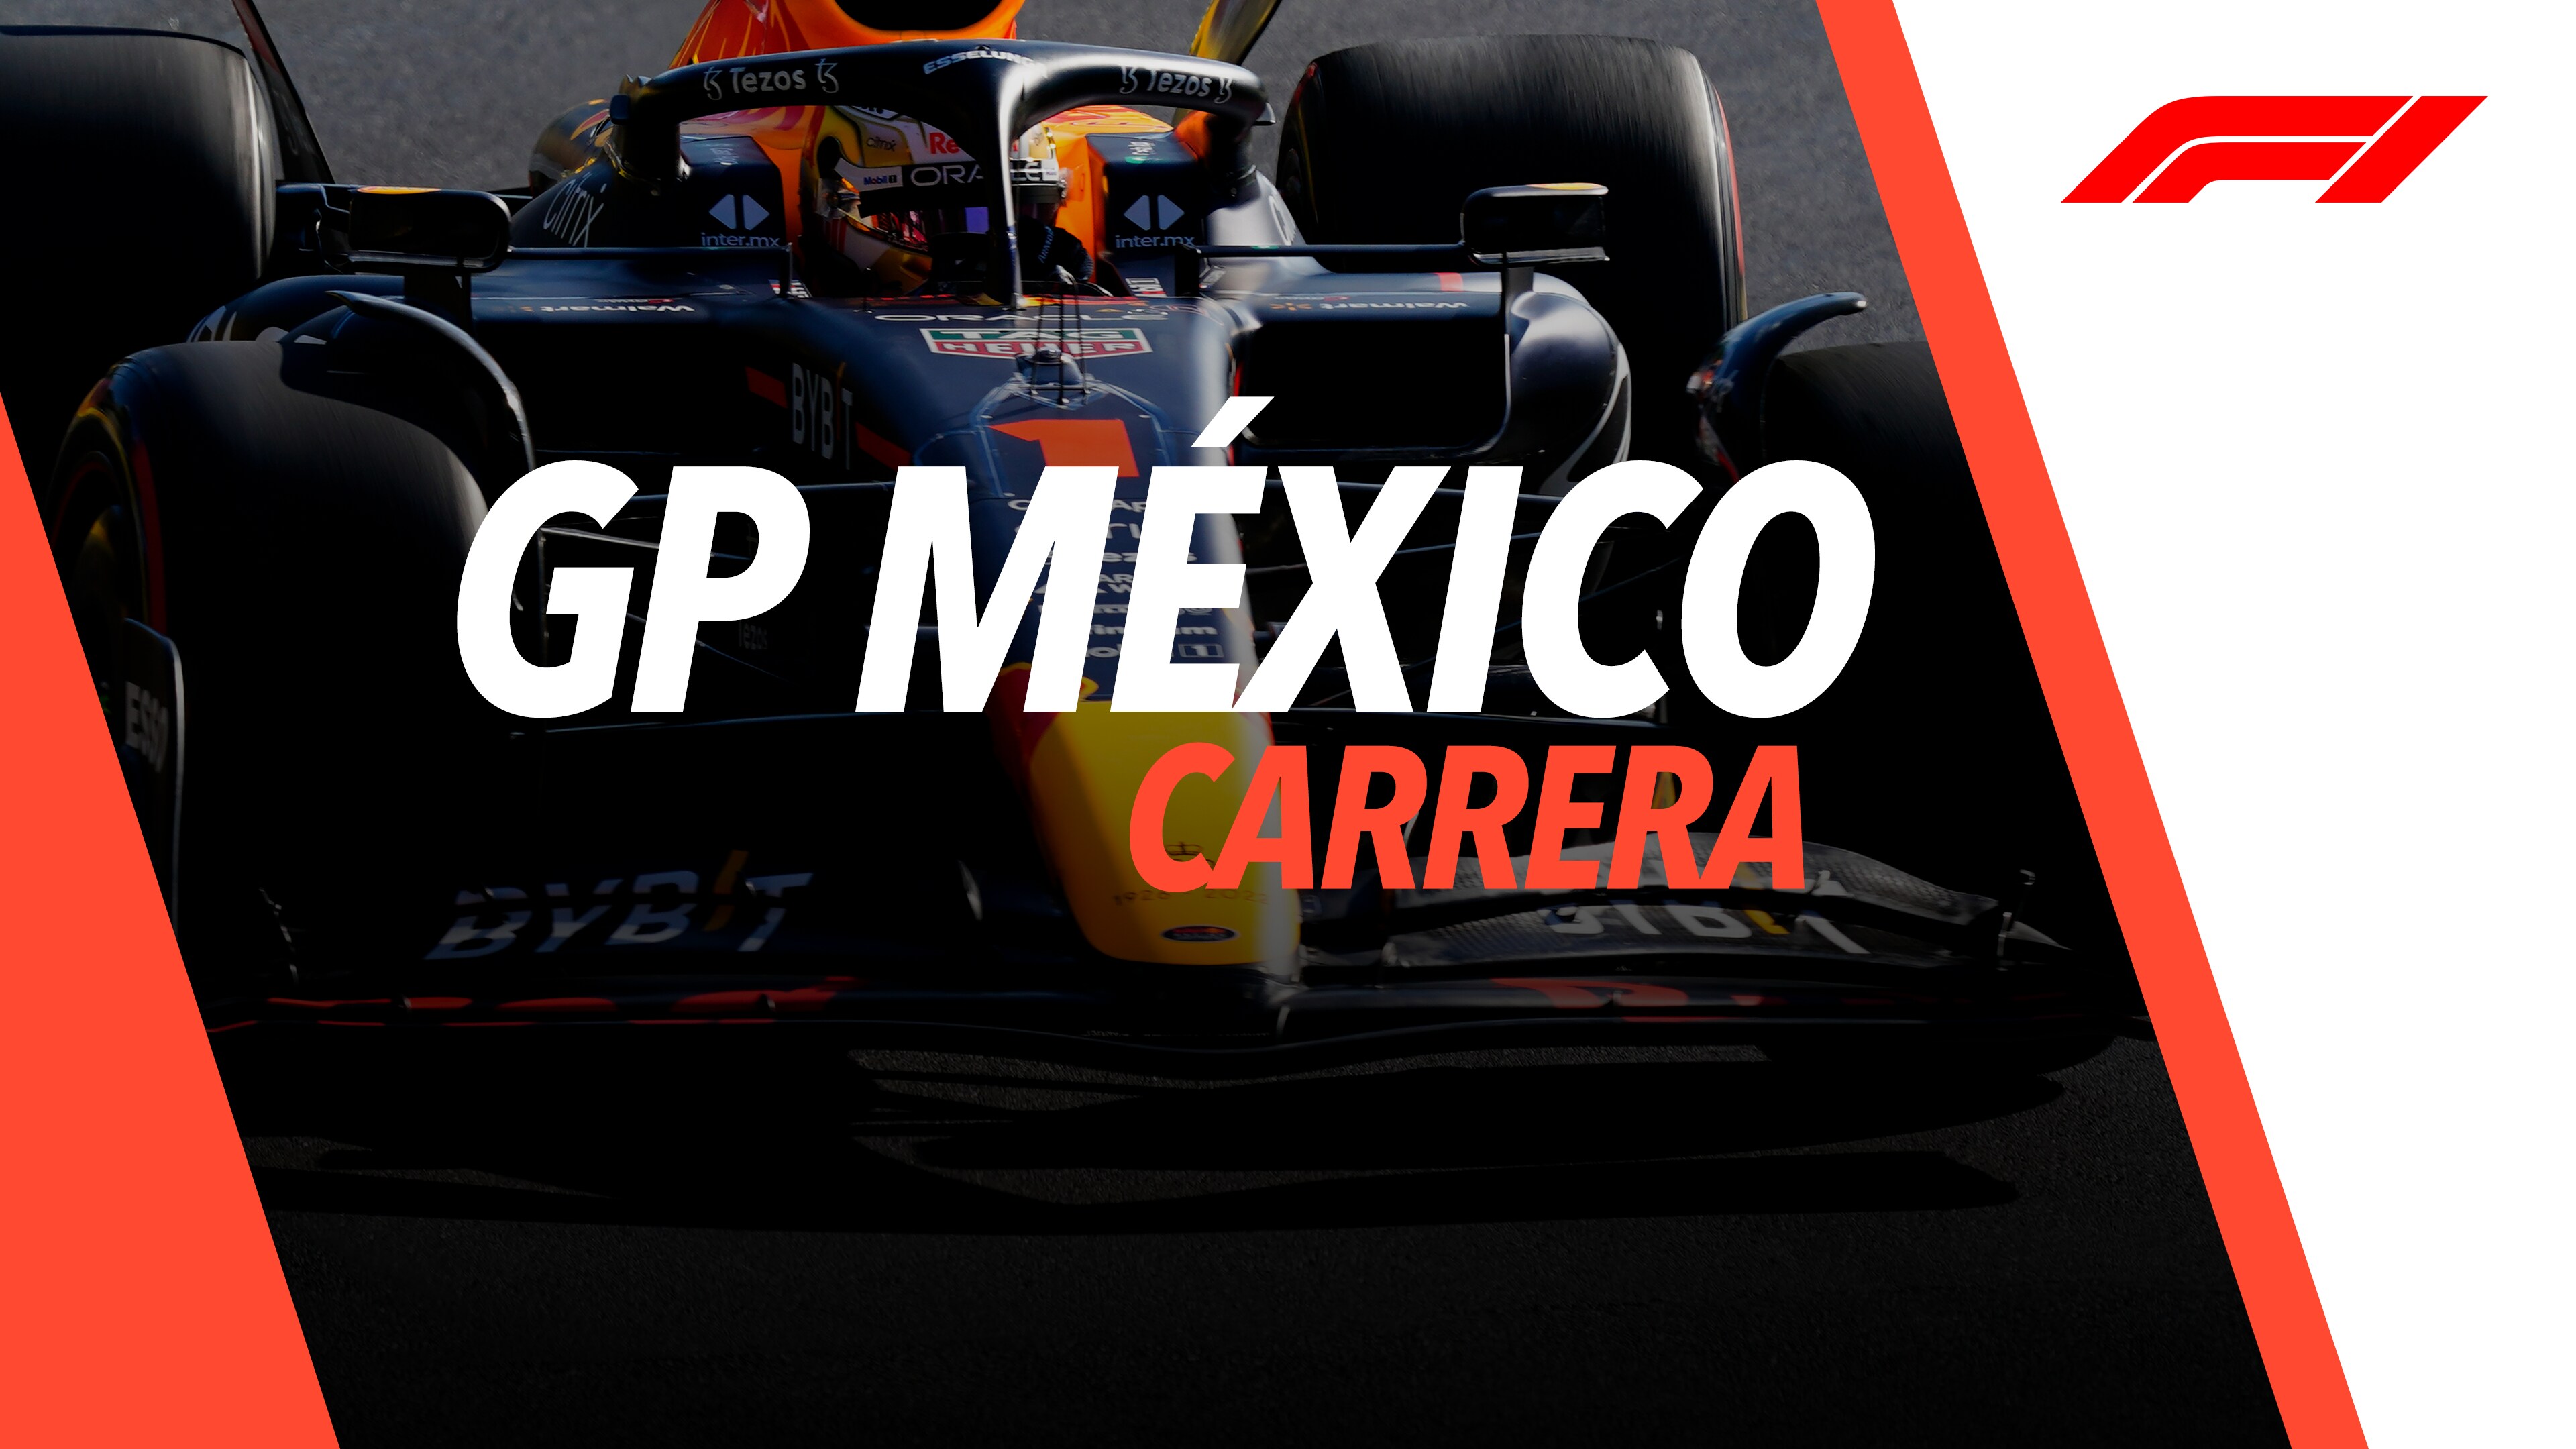 Fórmula 1 en vivo: dónde ver online el GP de México | Star Latinoamérica